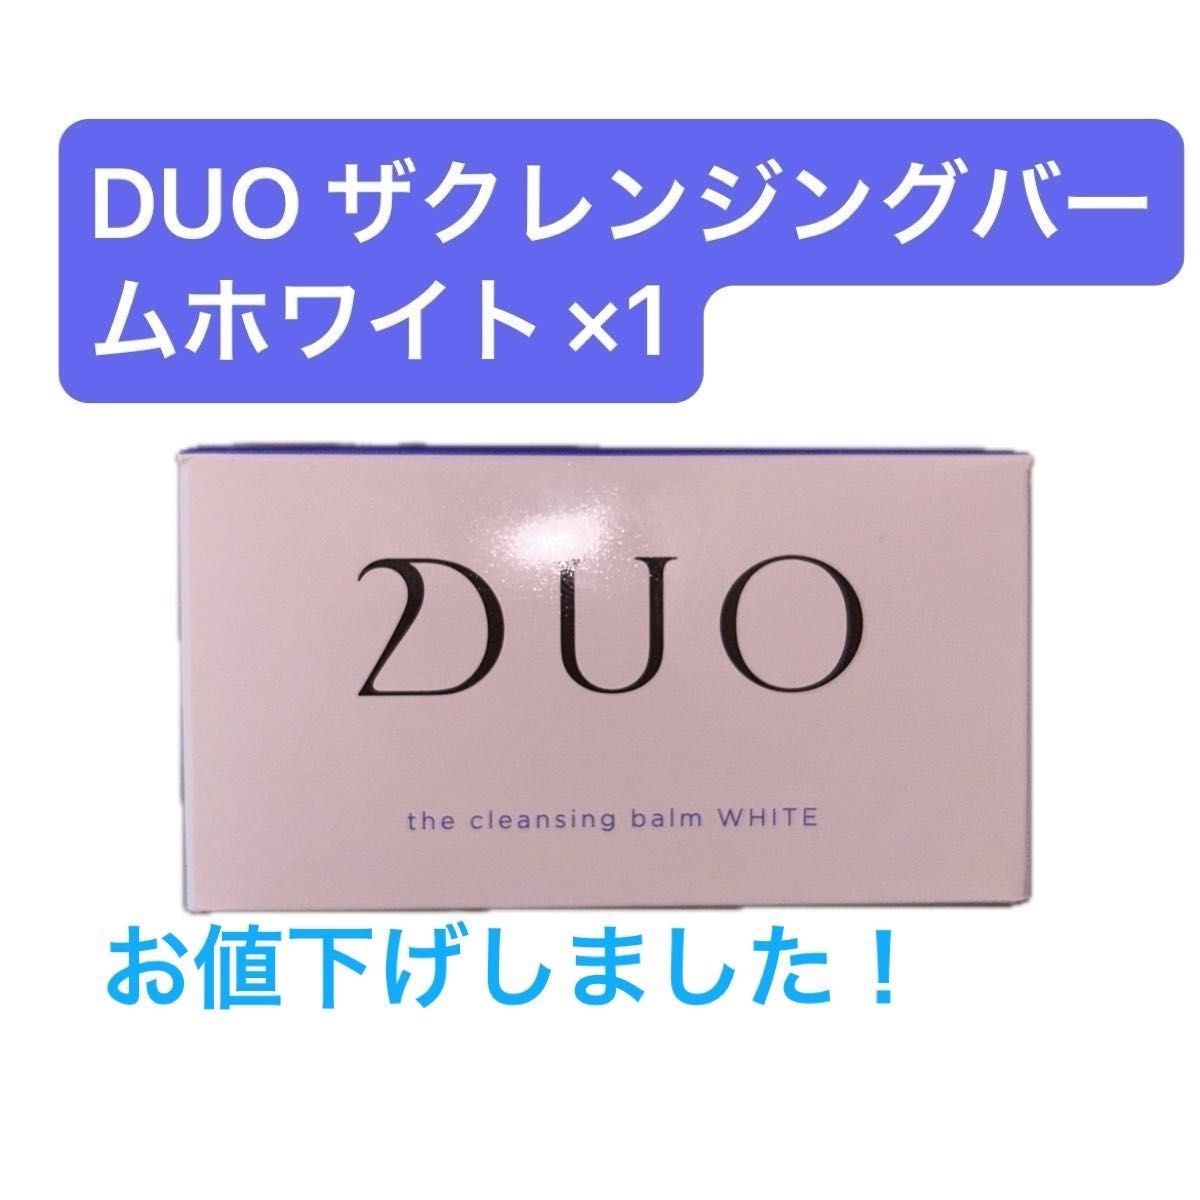 あか様専用【新品未開封】DUO ザクレンジングバーム ホワイトa 90g